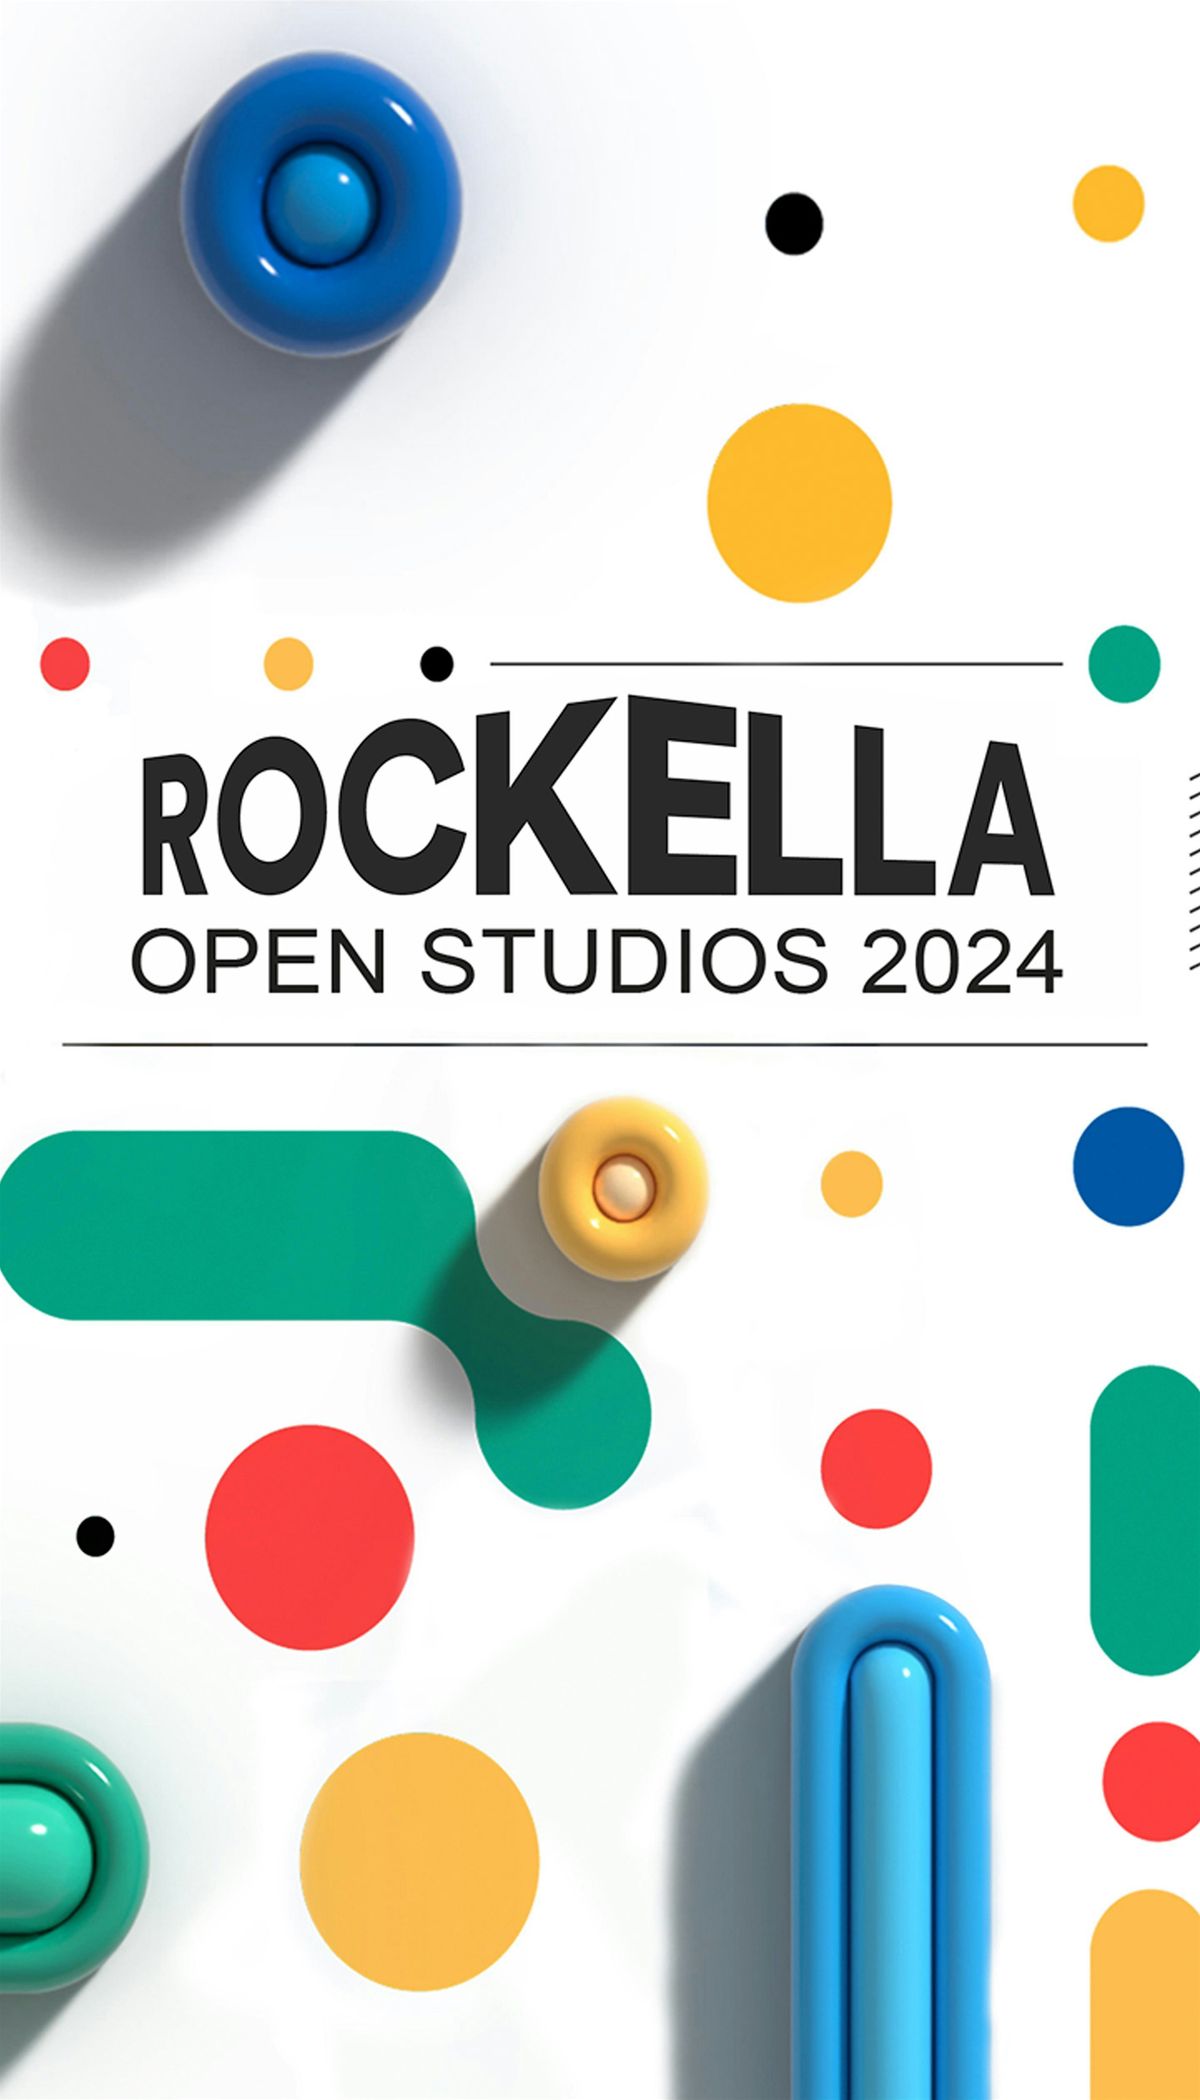 ROCKELLA OPEN STUDIOS 2024